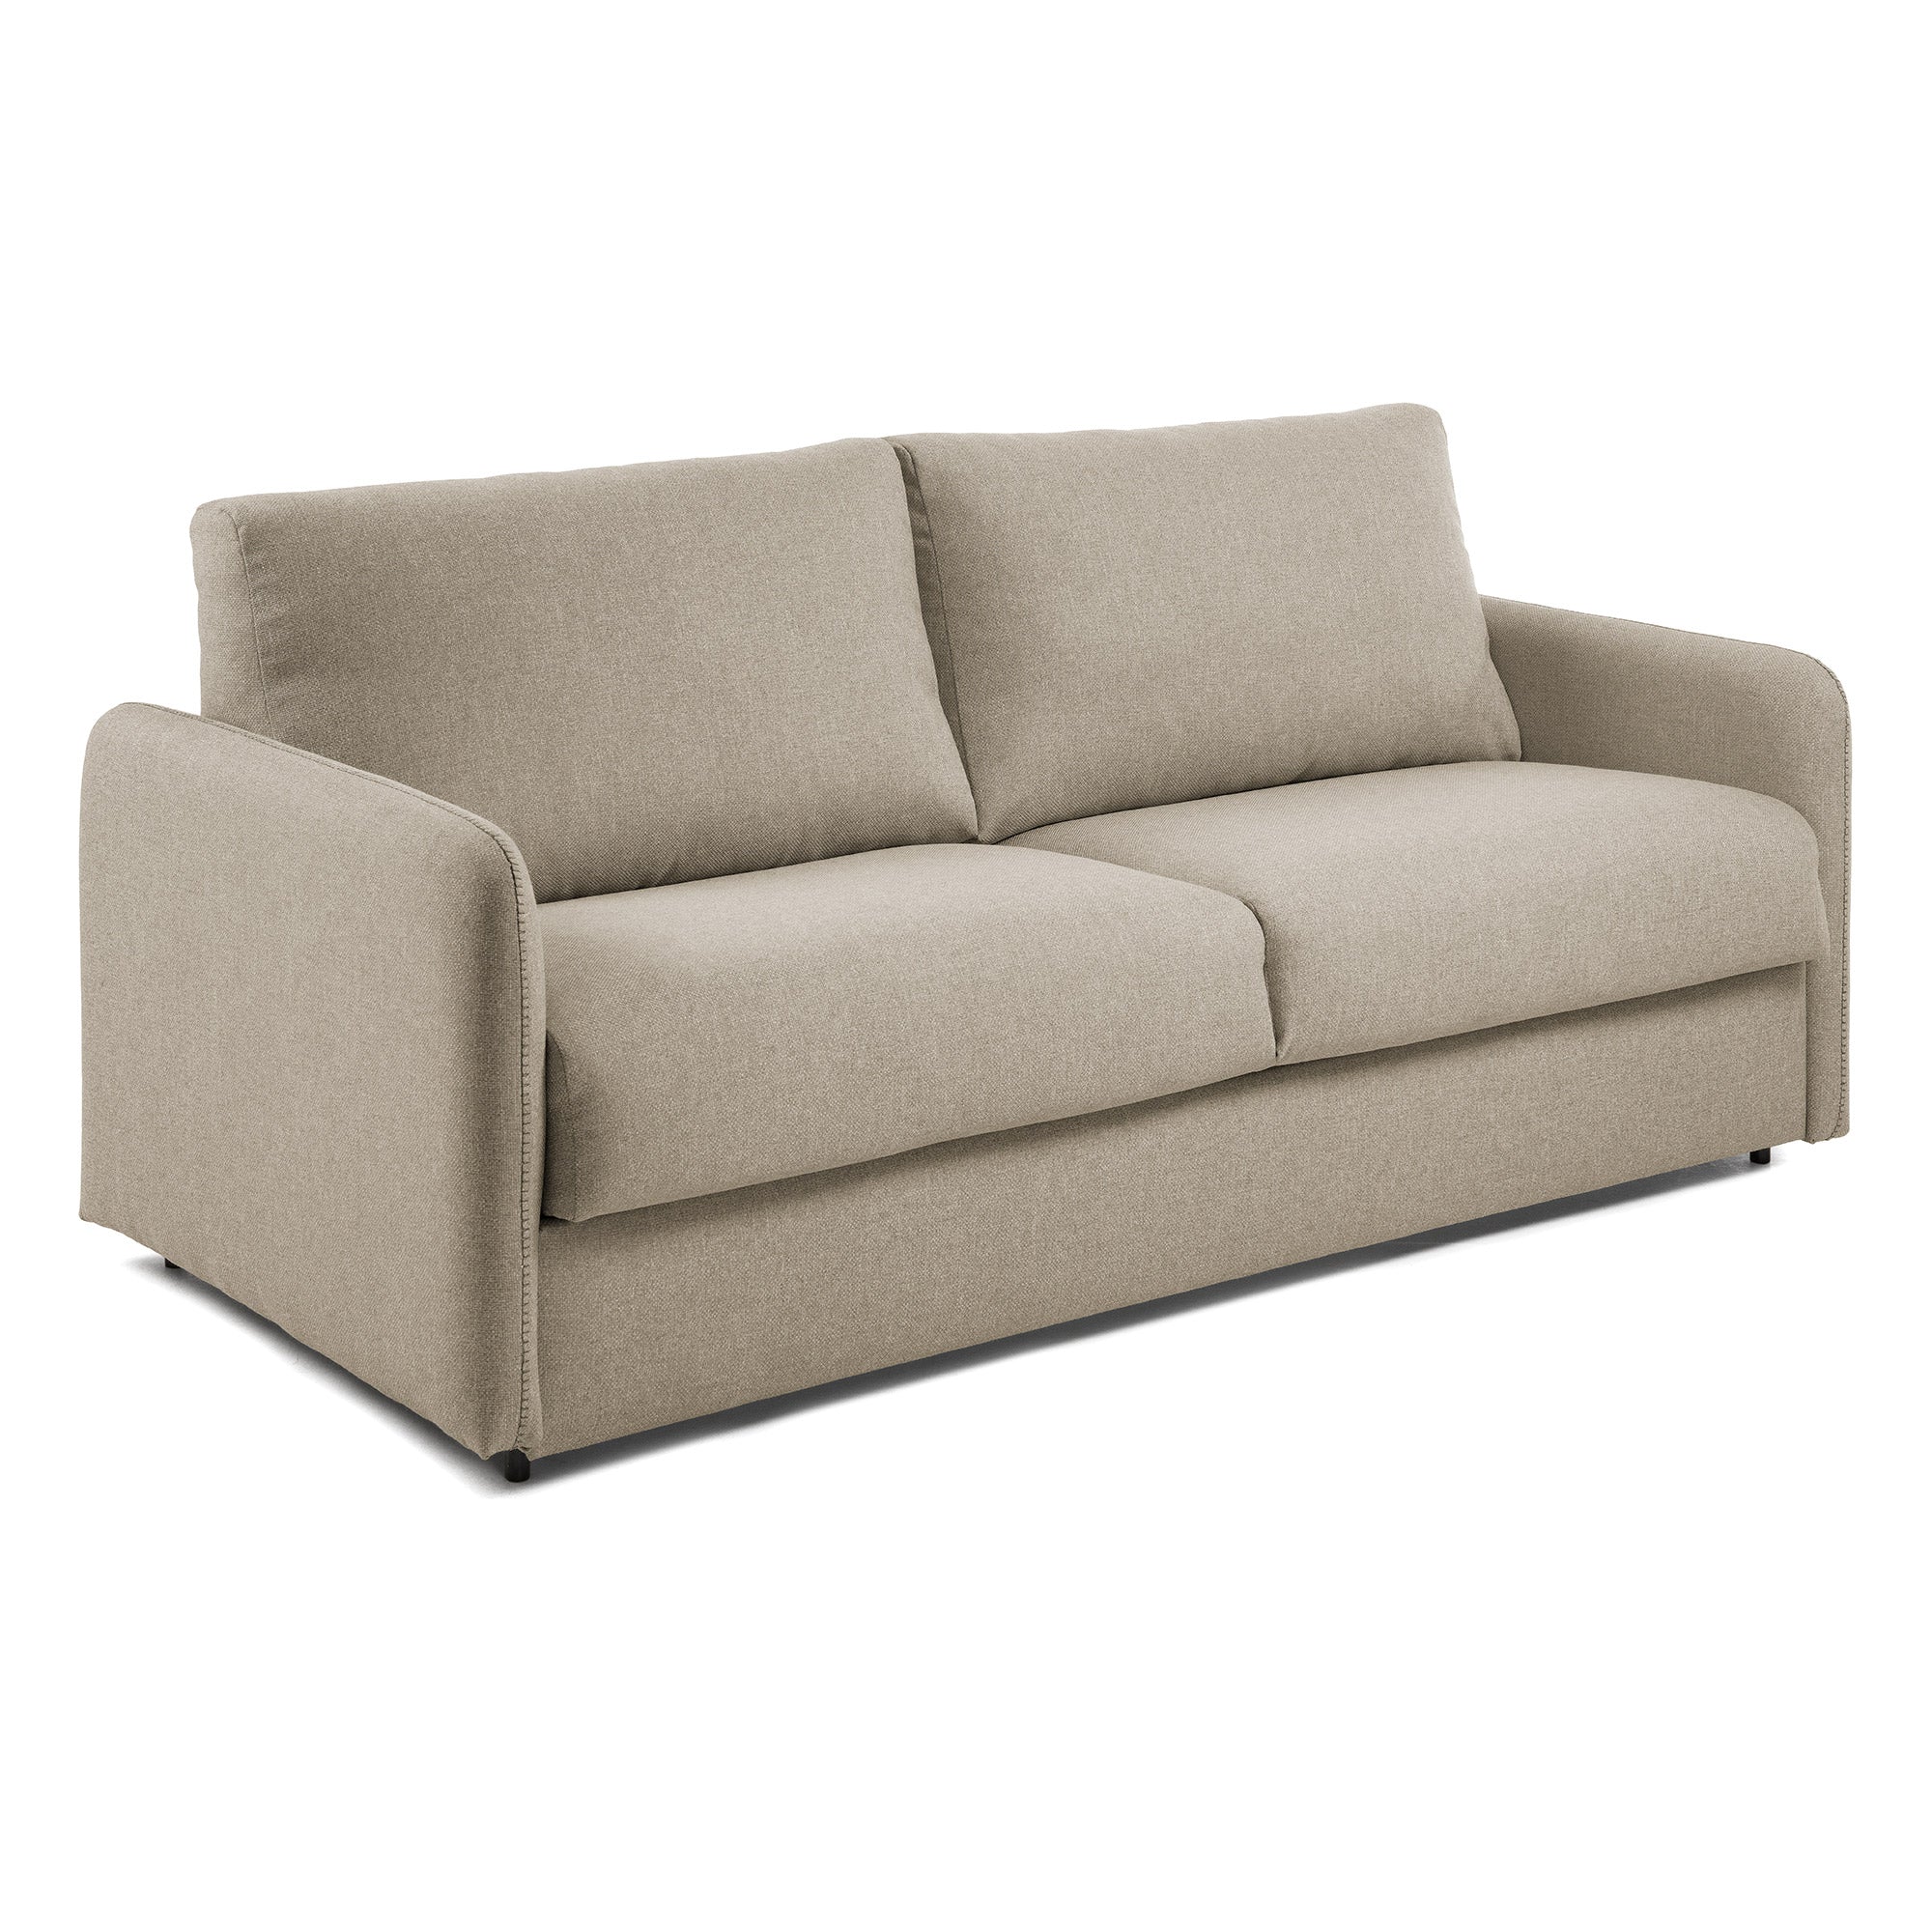 Kymoon 2 személyes visco kanapéágy, 160cm, krónikabézs színben